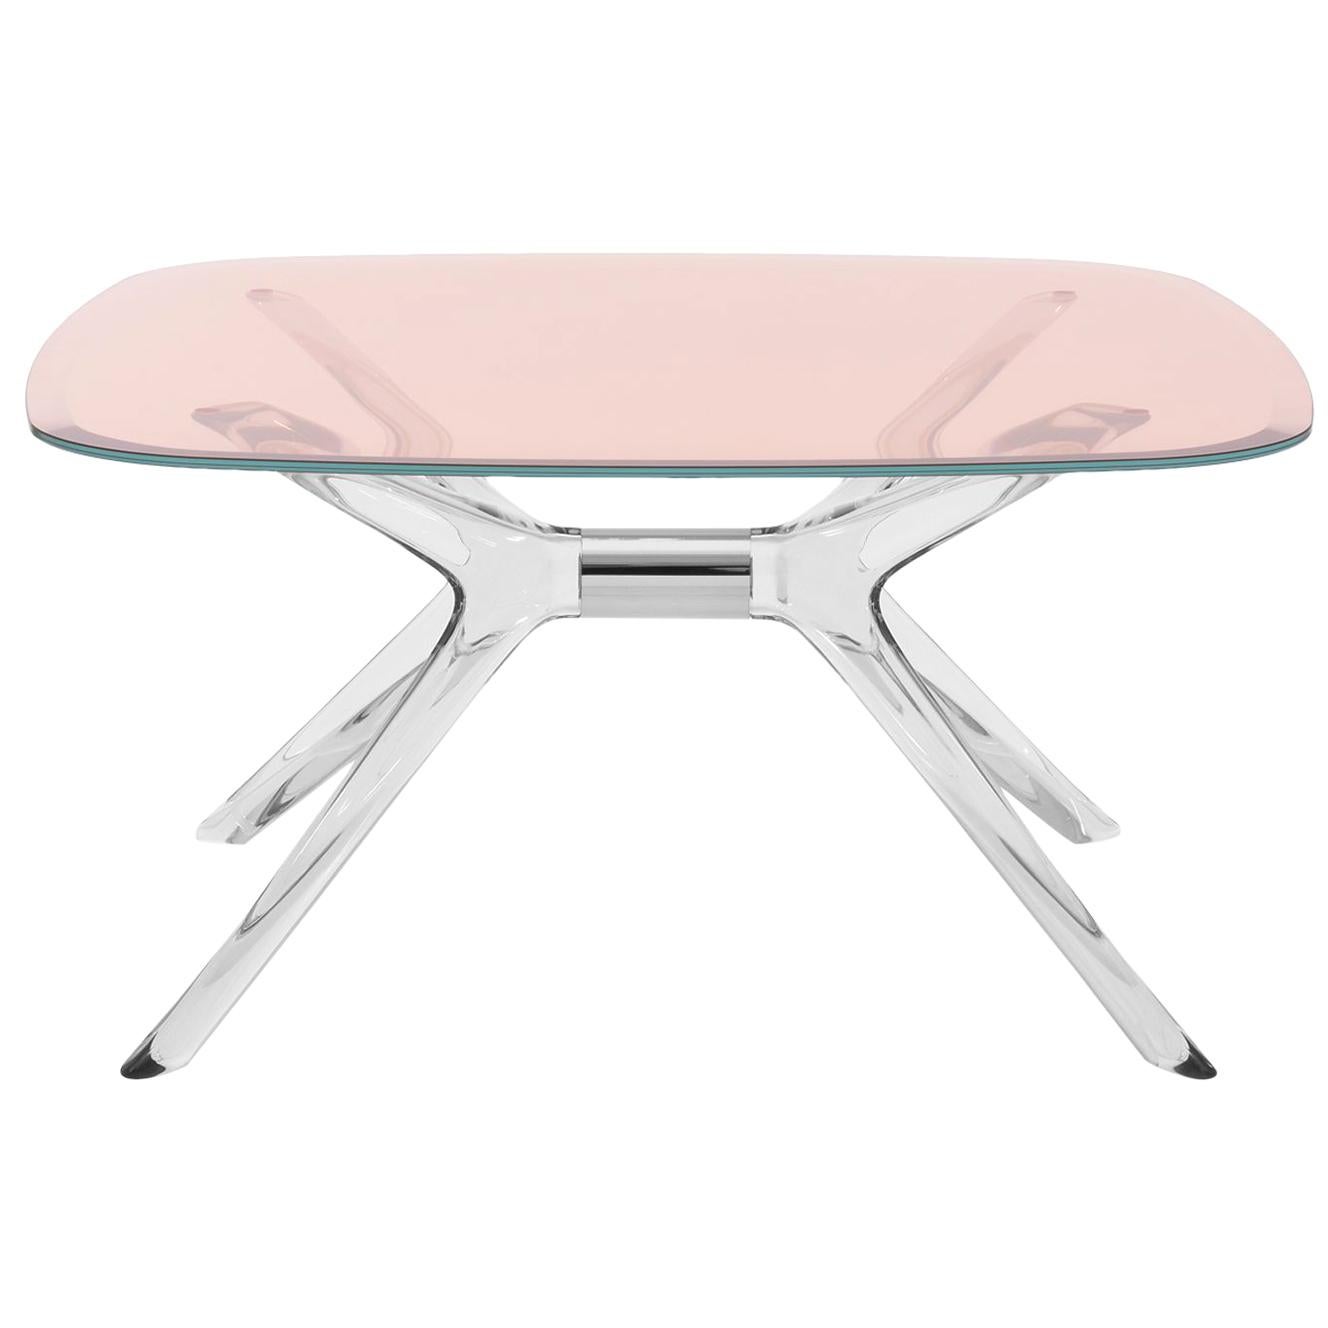 Table basse carrée Kartell Blast avec plateau rose de Philippe Starck